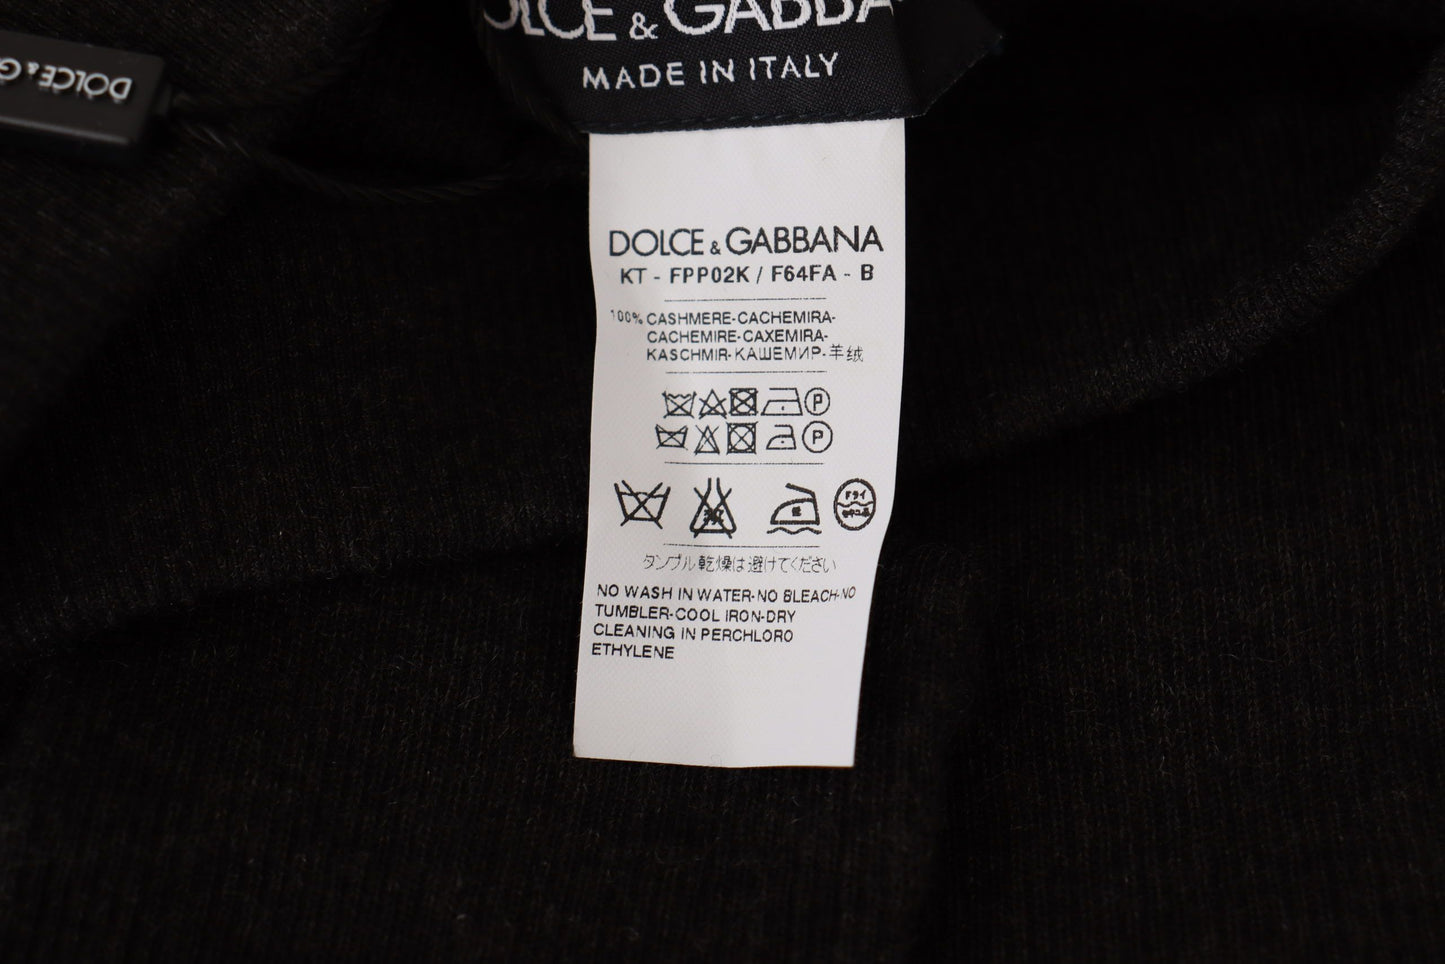 Dolce & Gabbana Grey Cashmere Strumpfhosen Strumpfhosen Socken ausgestattet